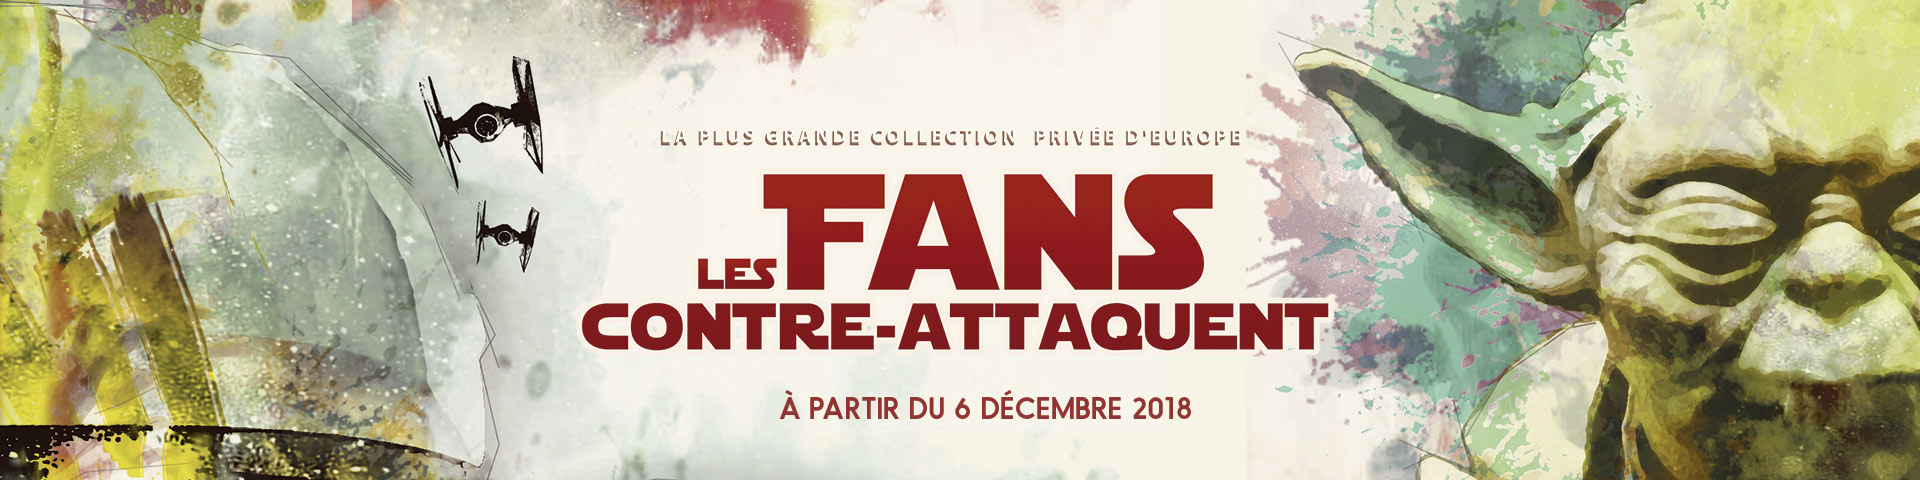 exposition - Les Fans contre-attaquent, exposition Star Wars à Paris fans contre attaquent expo star wars